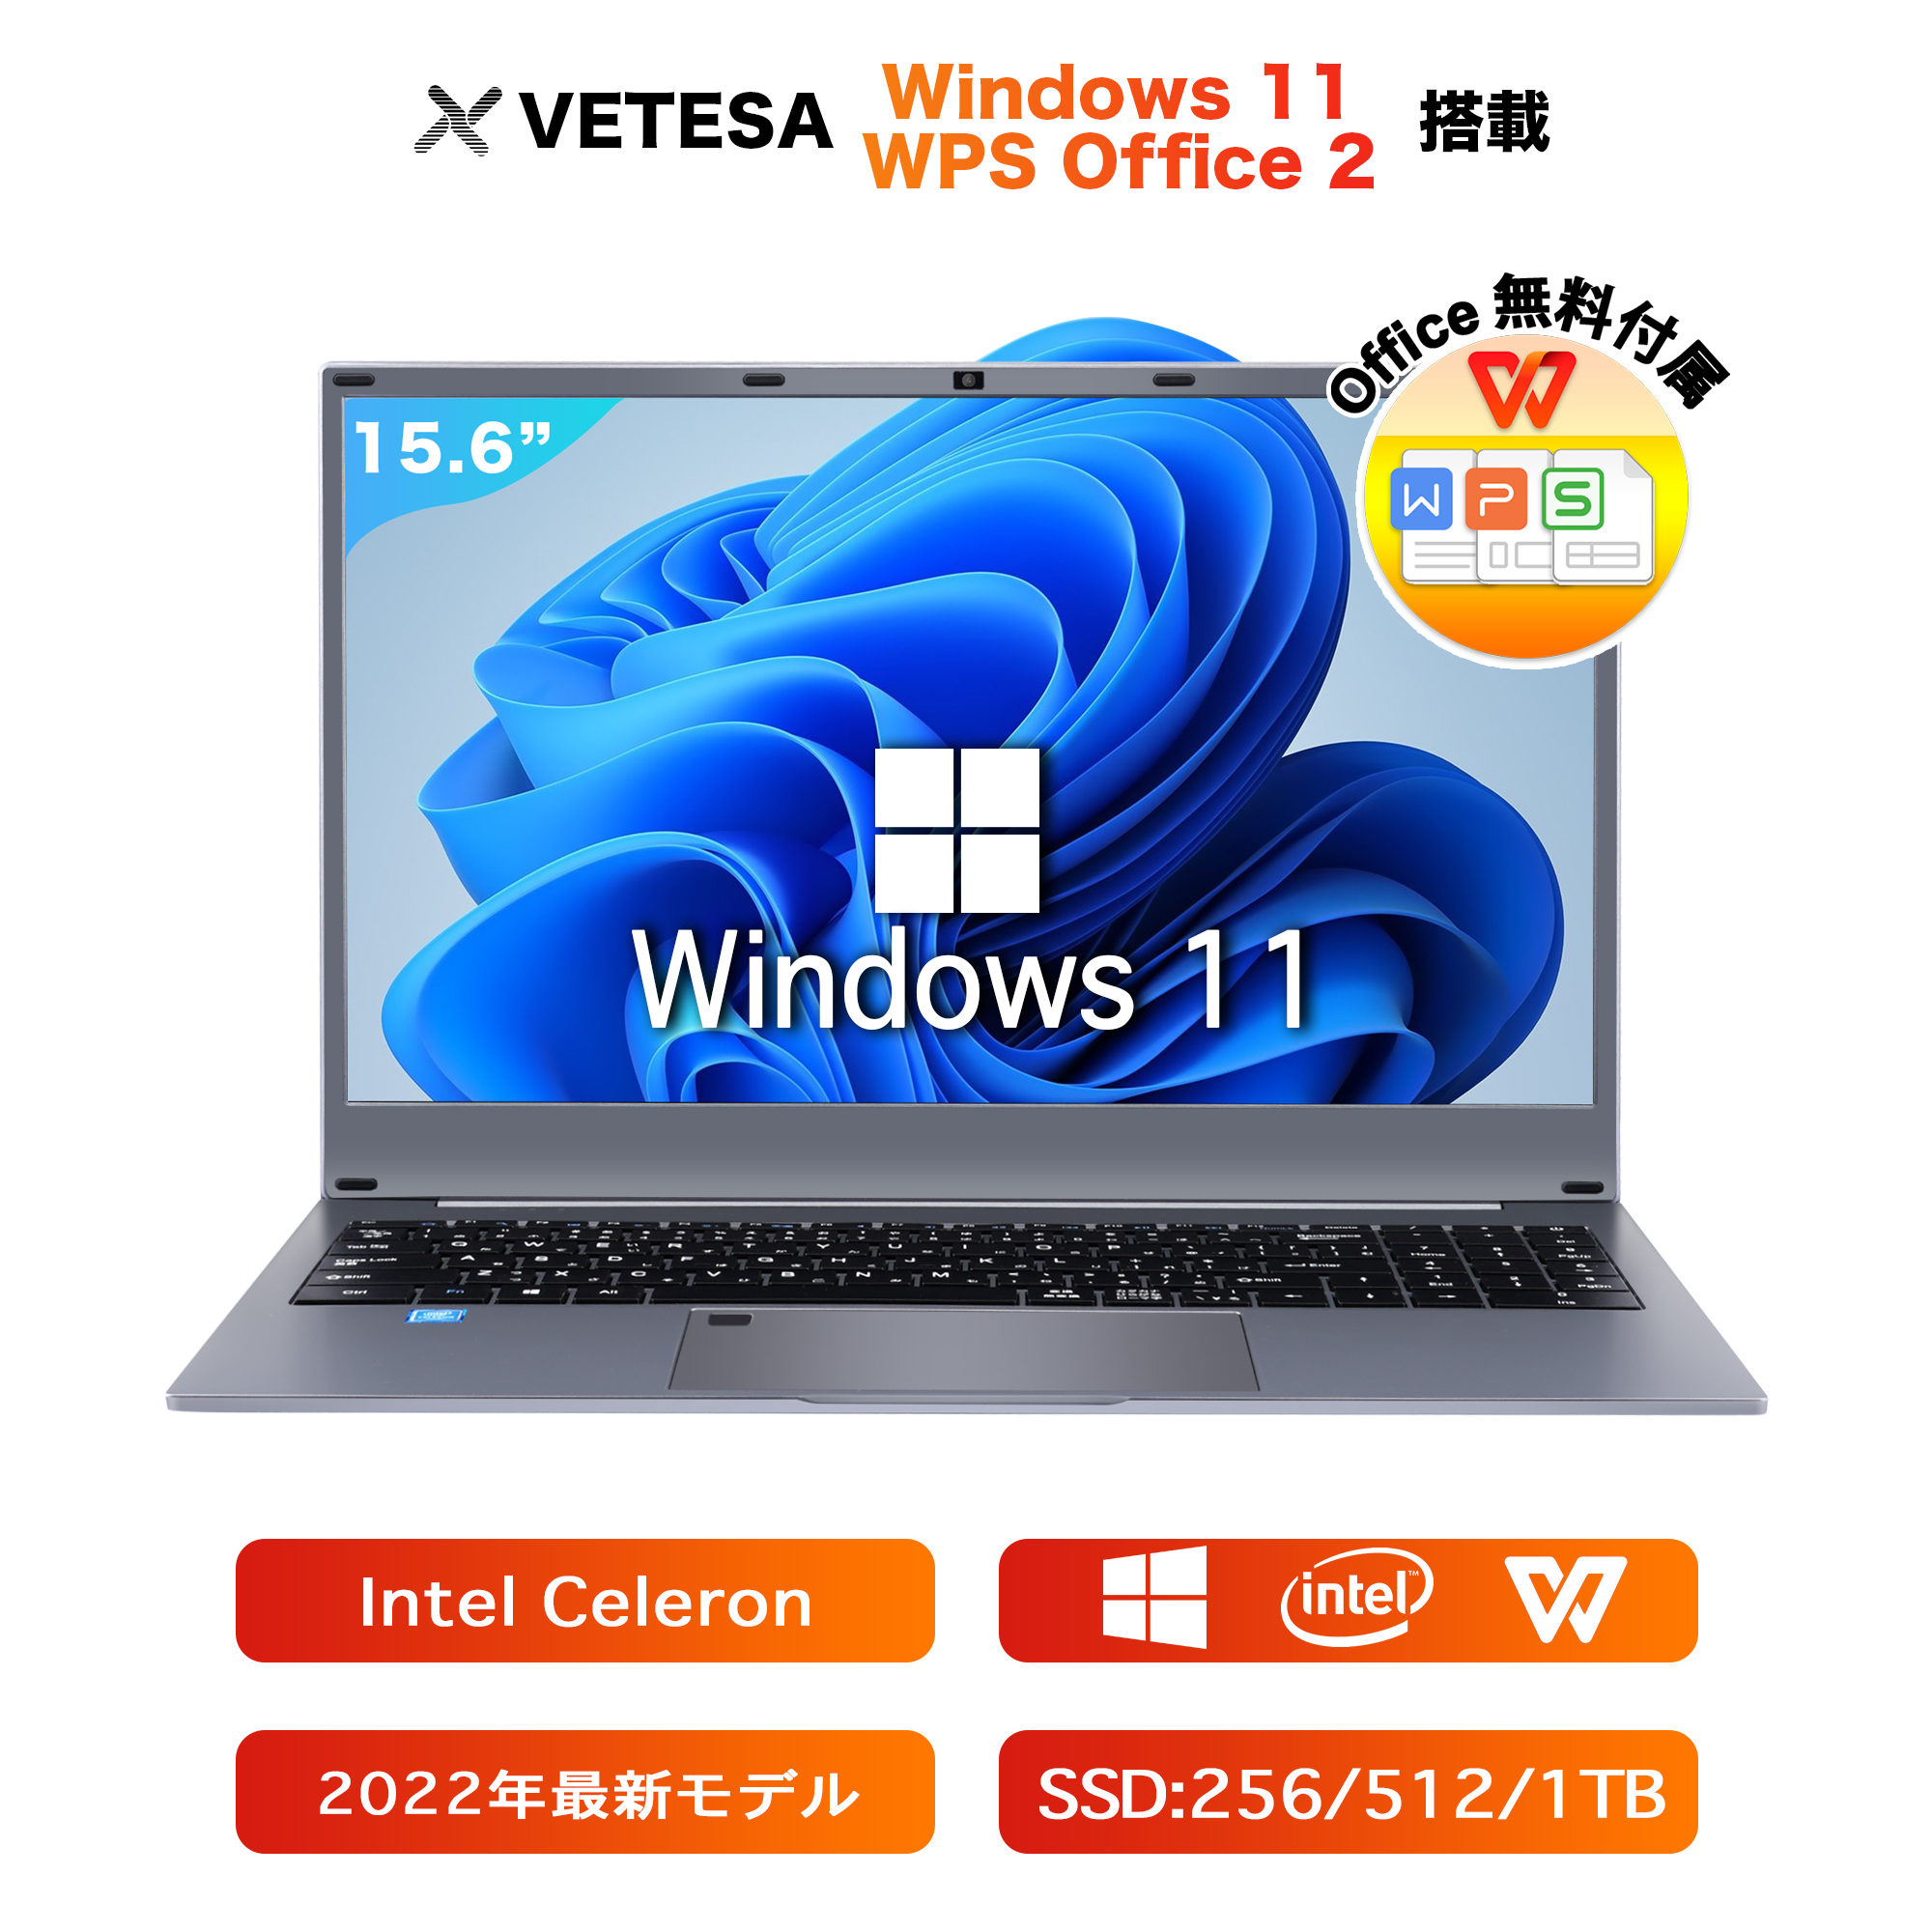 冬の華 ノートパソコンオフィス付き ssd付き Windows 11 レノボL570